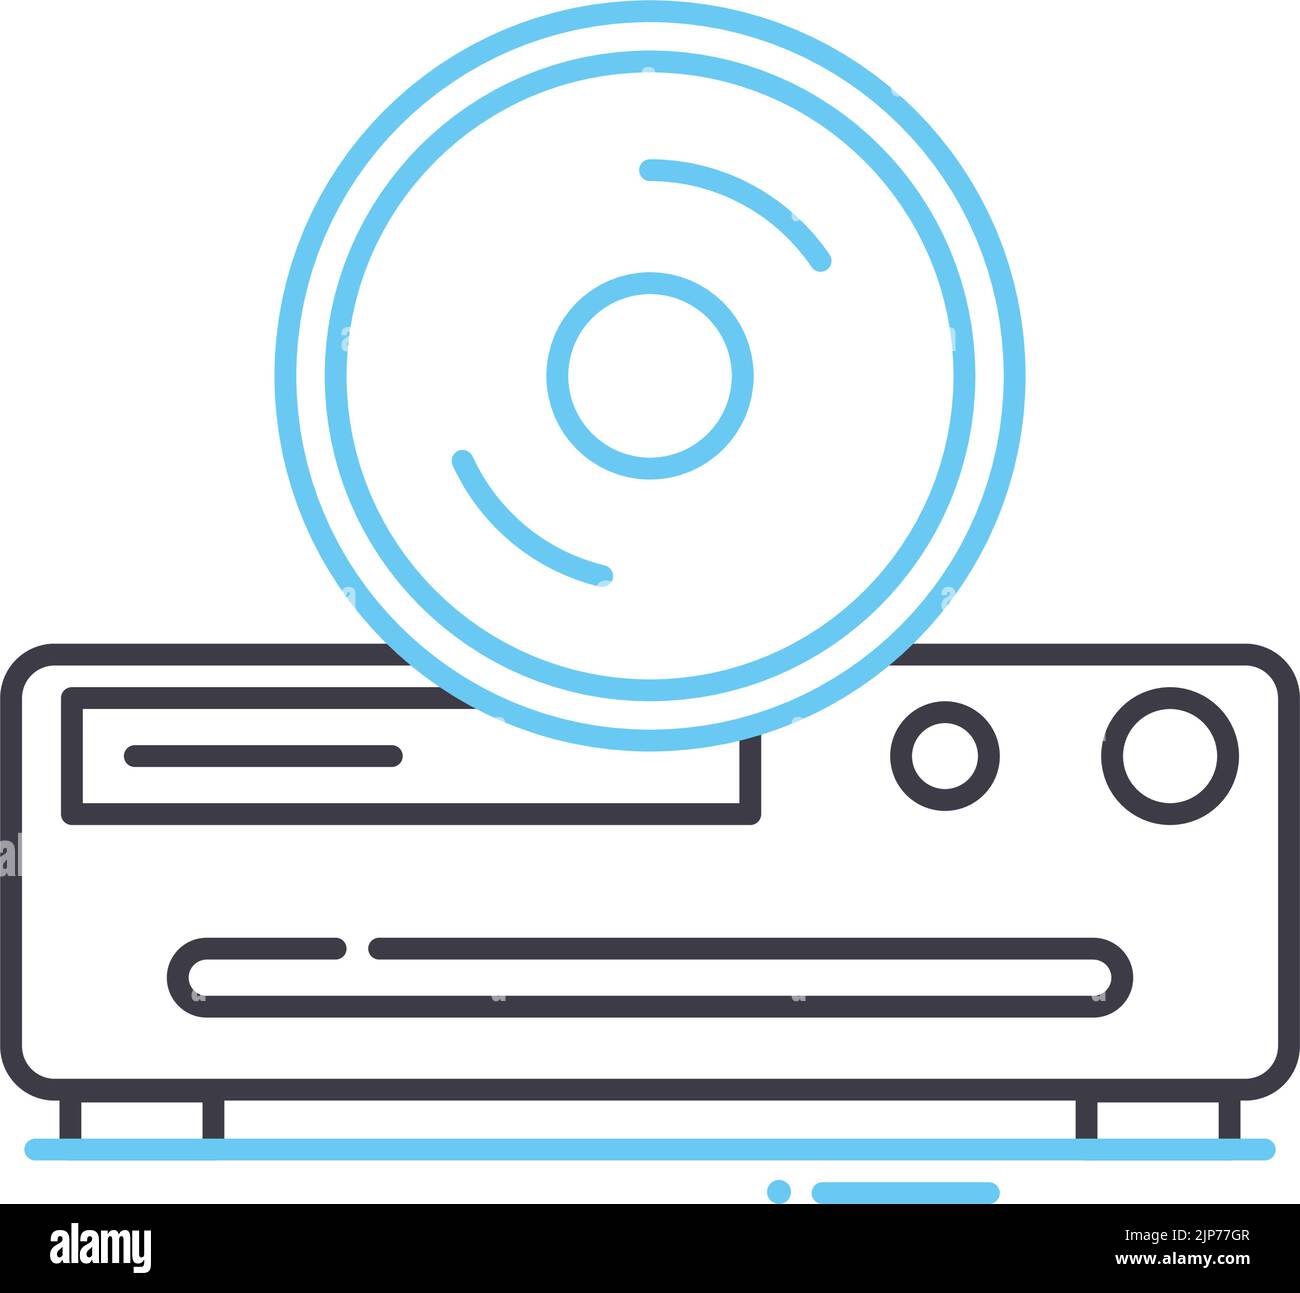 icona della linea del lettore cd, simbolo di contorno, illustrazione vettoriale, segnale concettuale Illustrazione Vettoriale